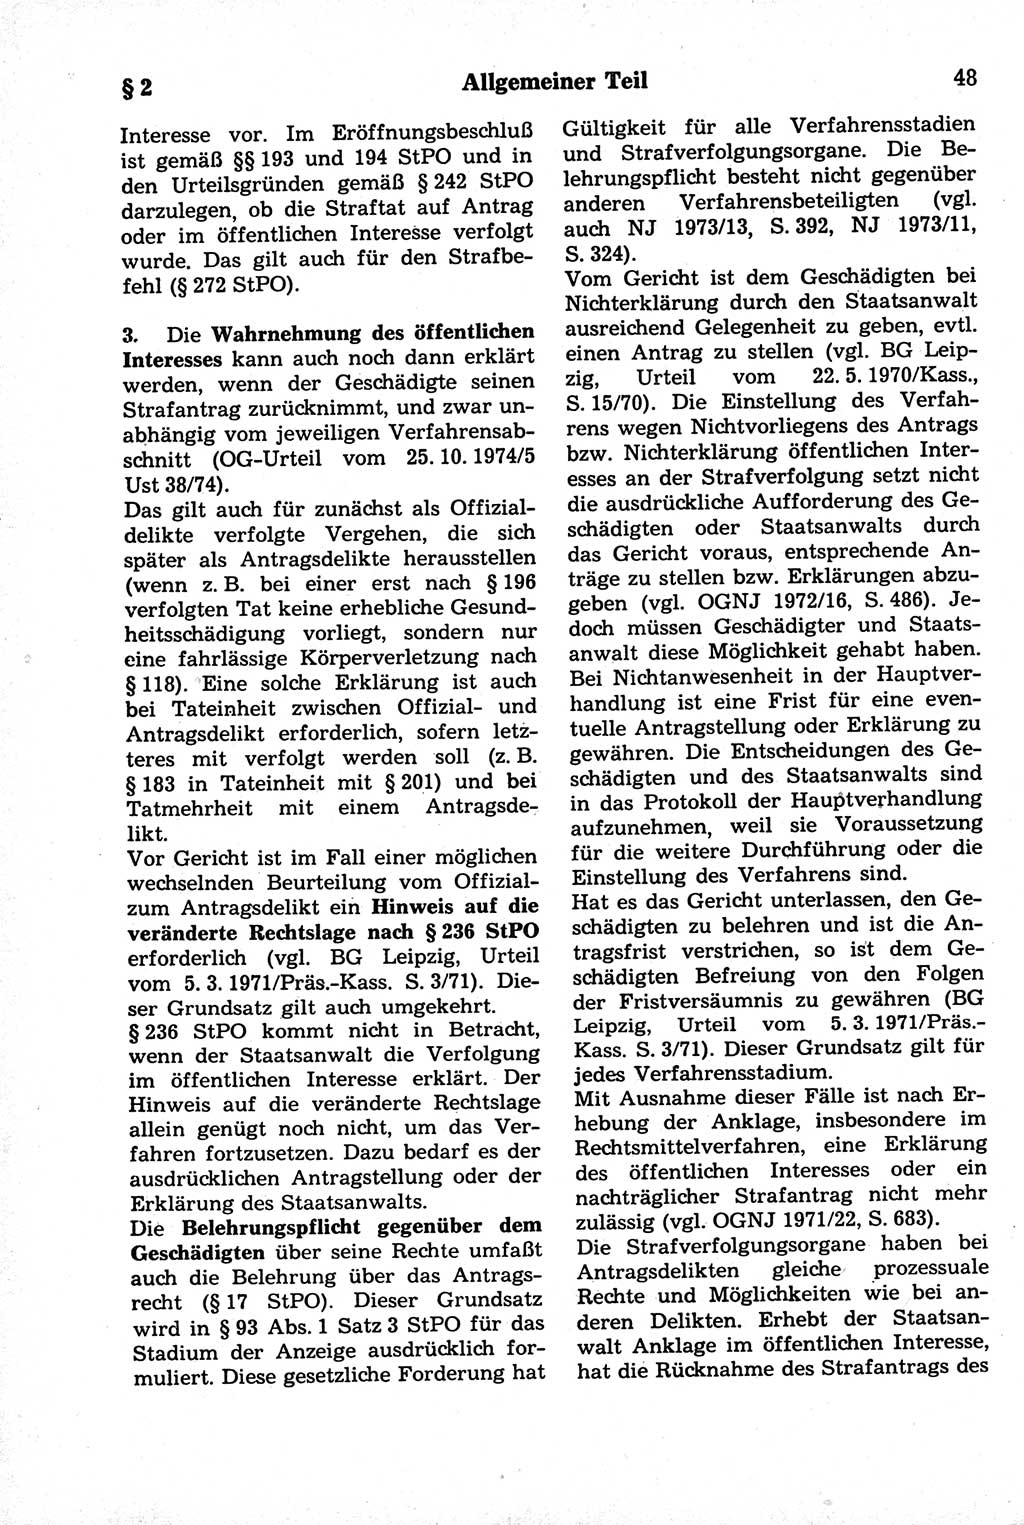 Strafrecht der Deutschen Demokratischen Republik (DDR), Kommentar zum Strafgesetzbuch (StGB) 1981, Seite 48 (Strafr. DDR Komm. StGB 1981, S. 48)